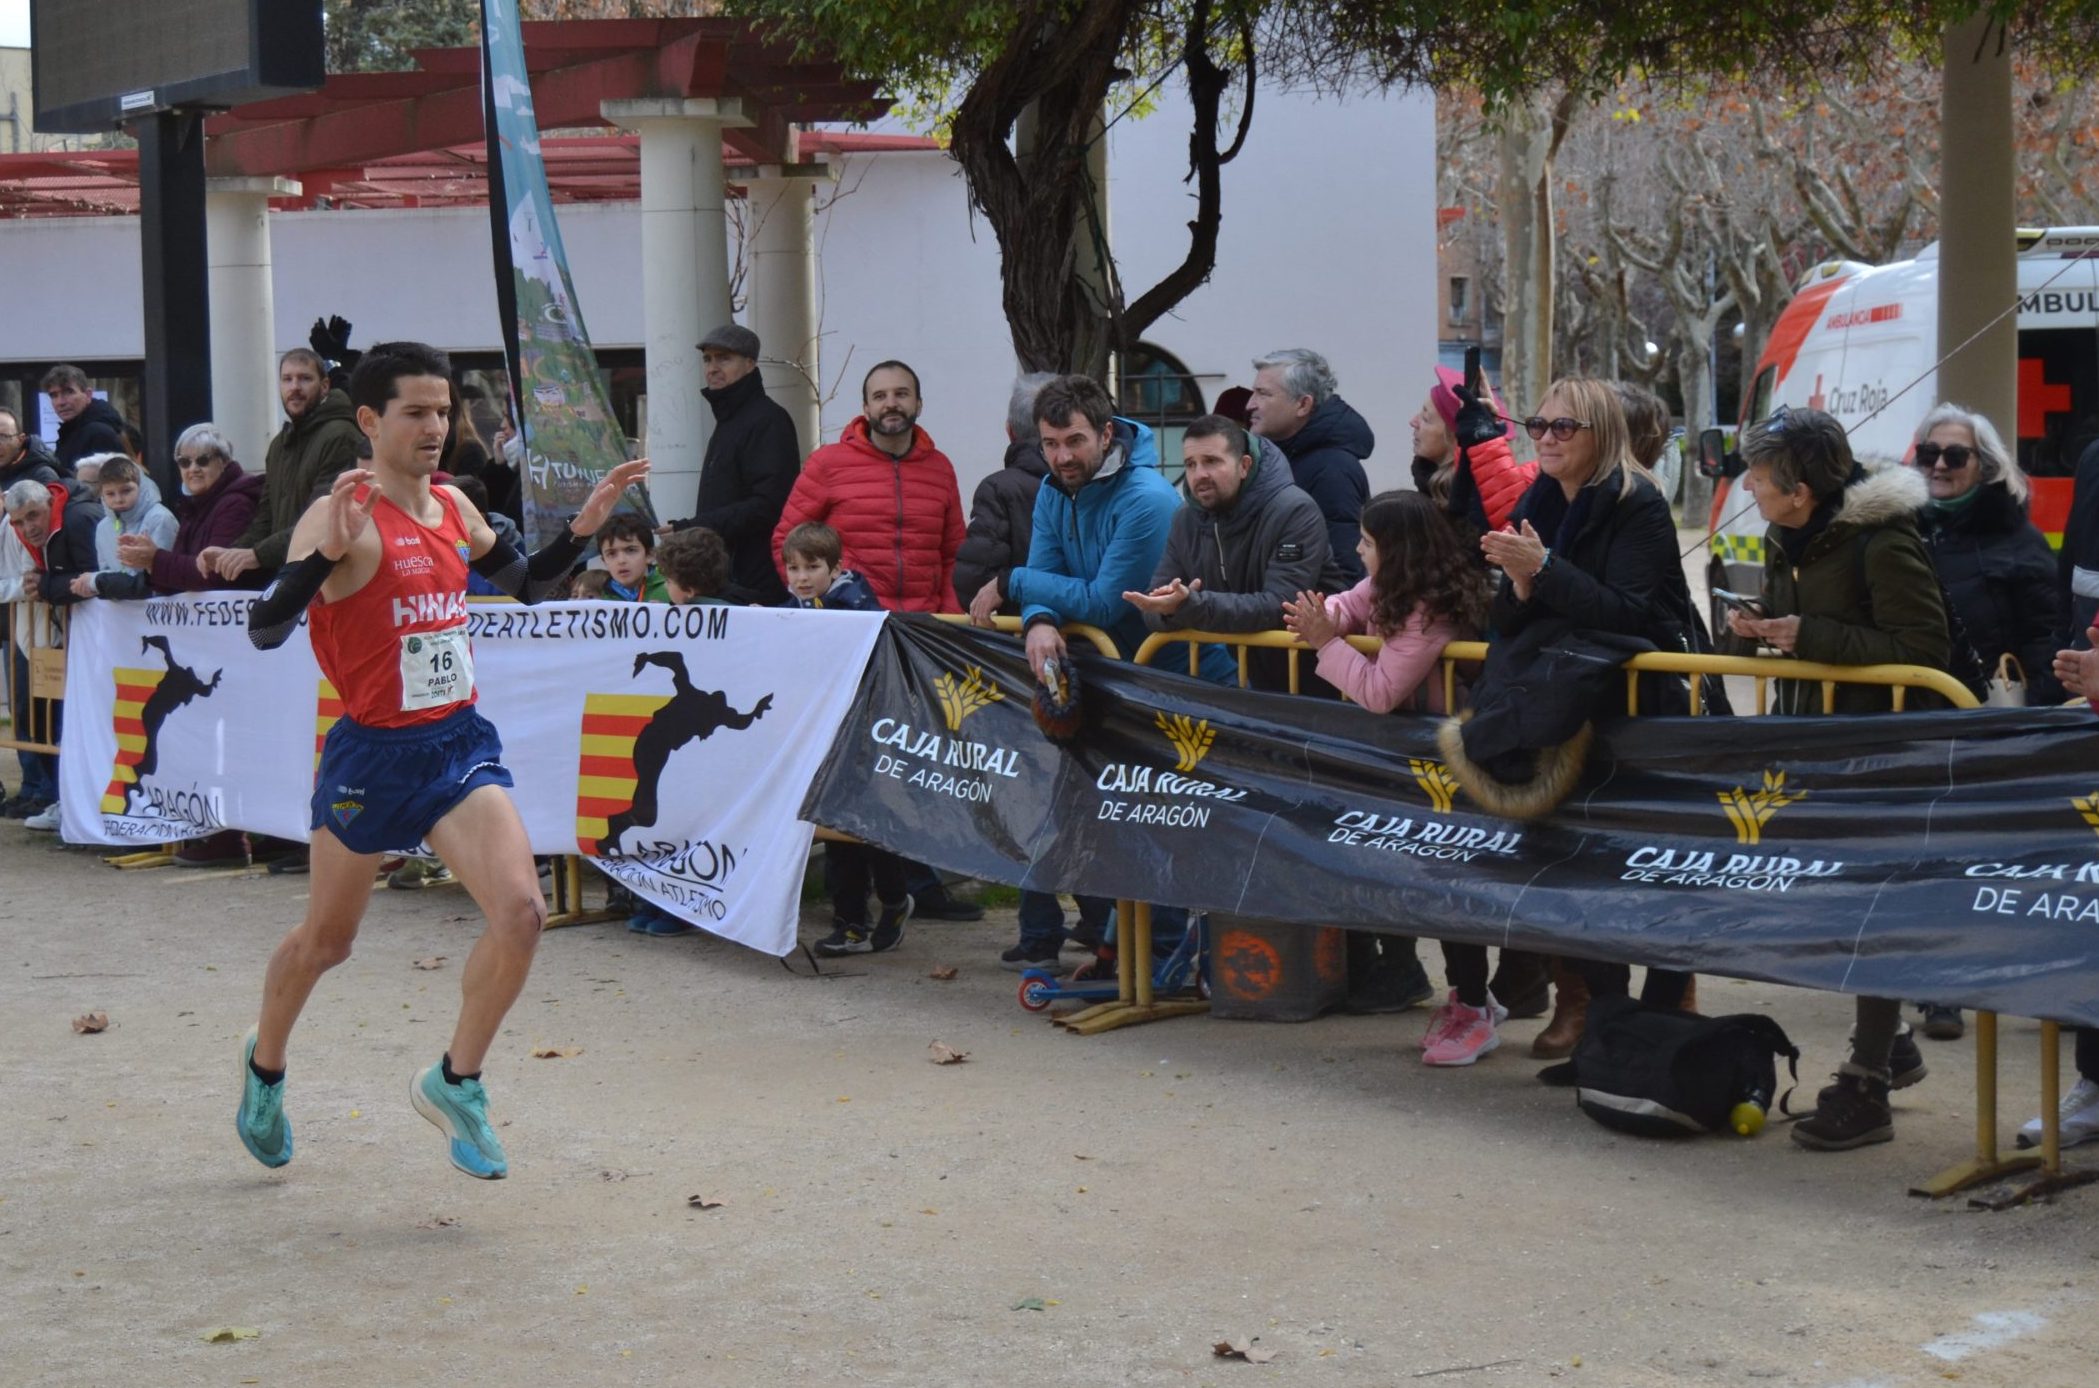 Pablo Salaverría en la imagen gana el aragonés de cross en Huesca. Foto: Sportaragon